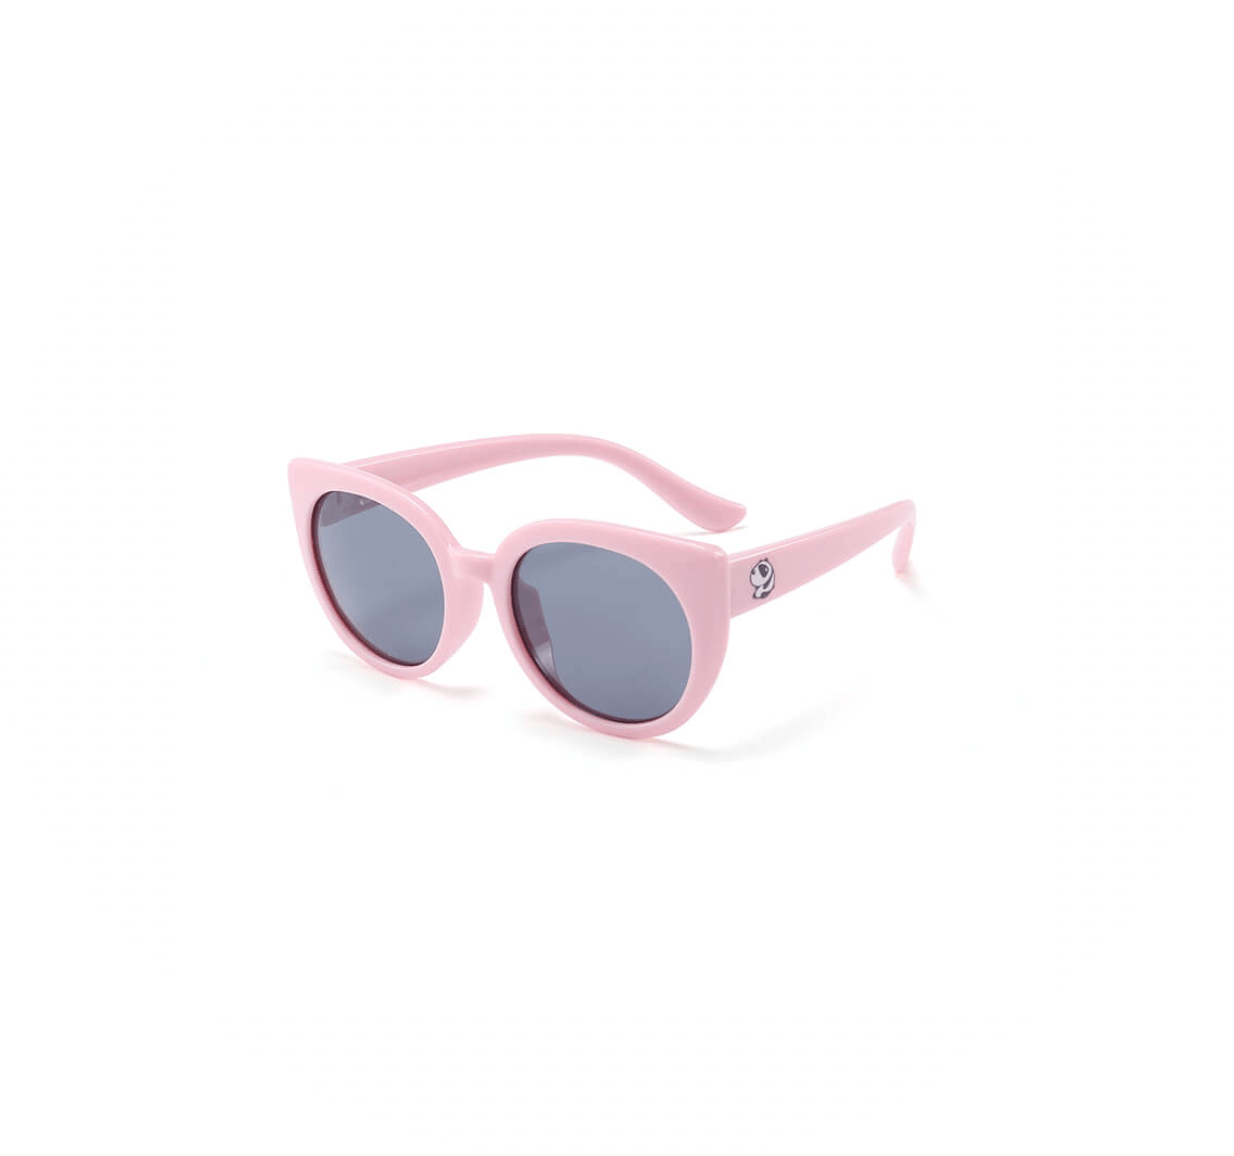 wholesale sunglasses polarized, pink girls sunglasses, polarized sunglass lenses wholesale, bulk polarized sunglasses, China sunglasses supplier